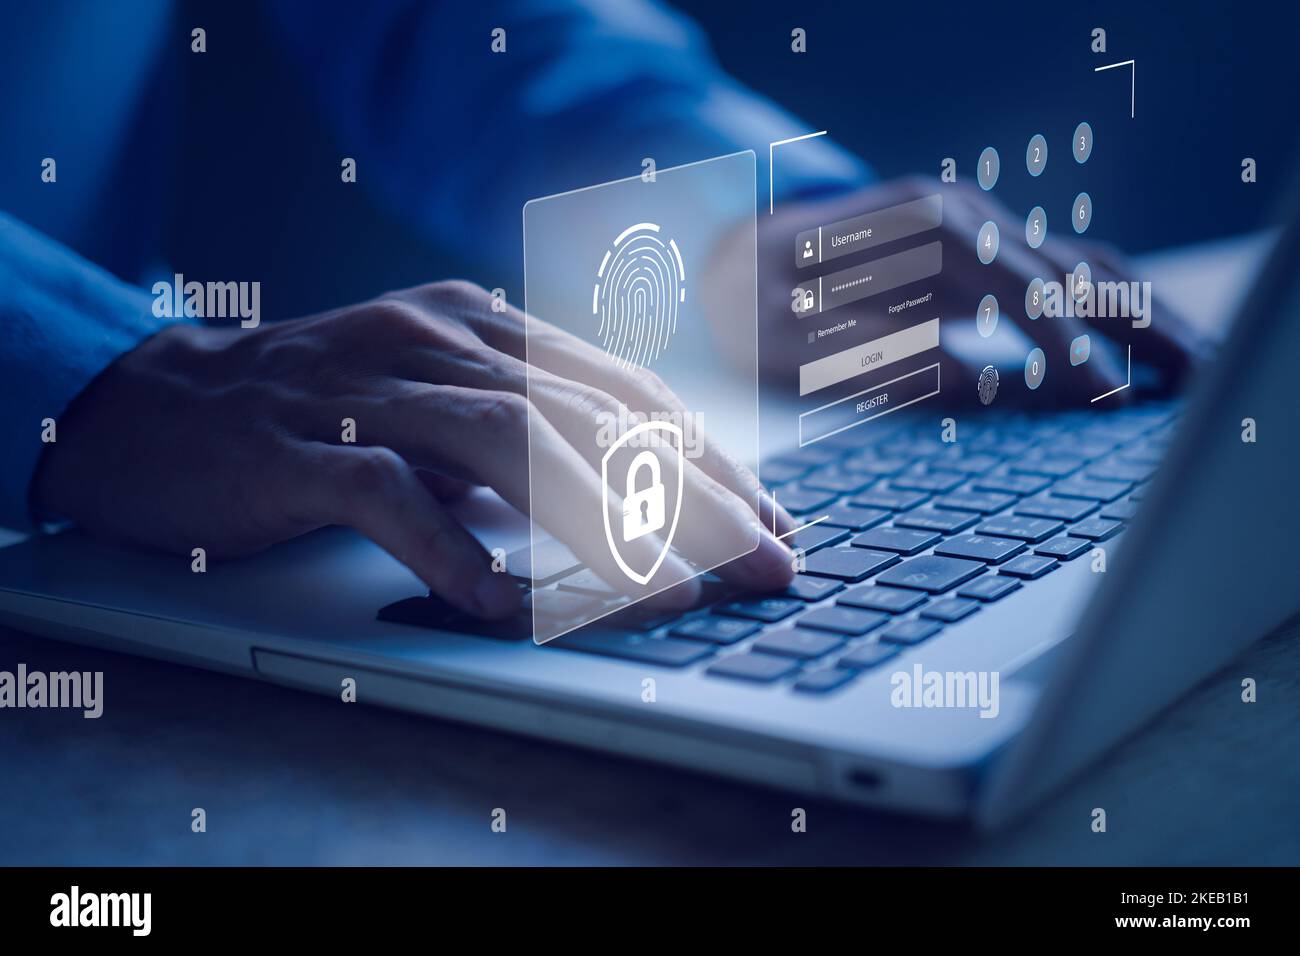 Benutzername und Passwort (Login) mit biometrischer Identifikation Fingerabdruckscanner, Verschlüsselung für Technologie Cyber Security Internet und Netzwerk-System Stockfoto